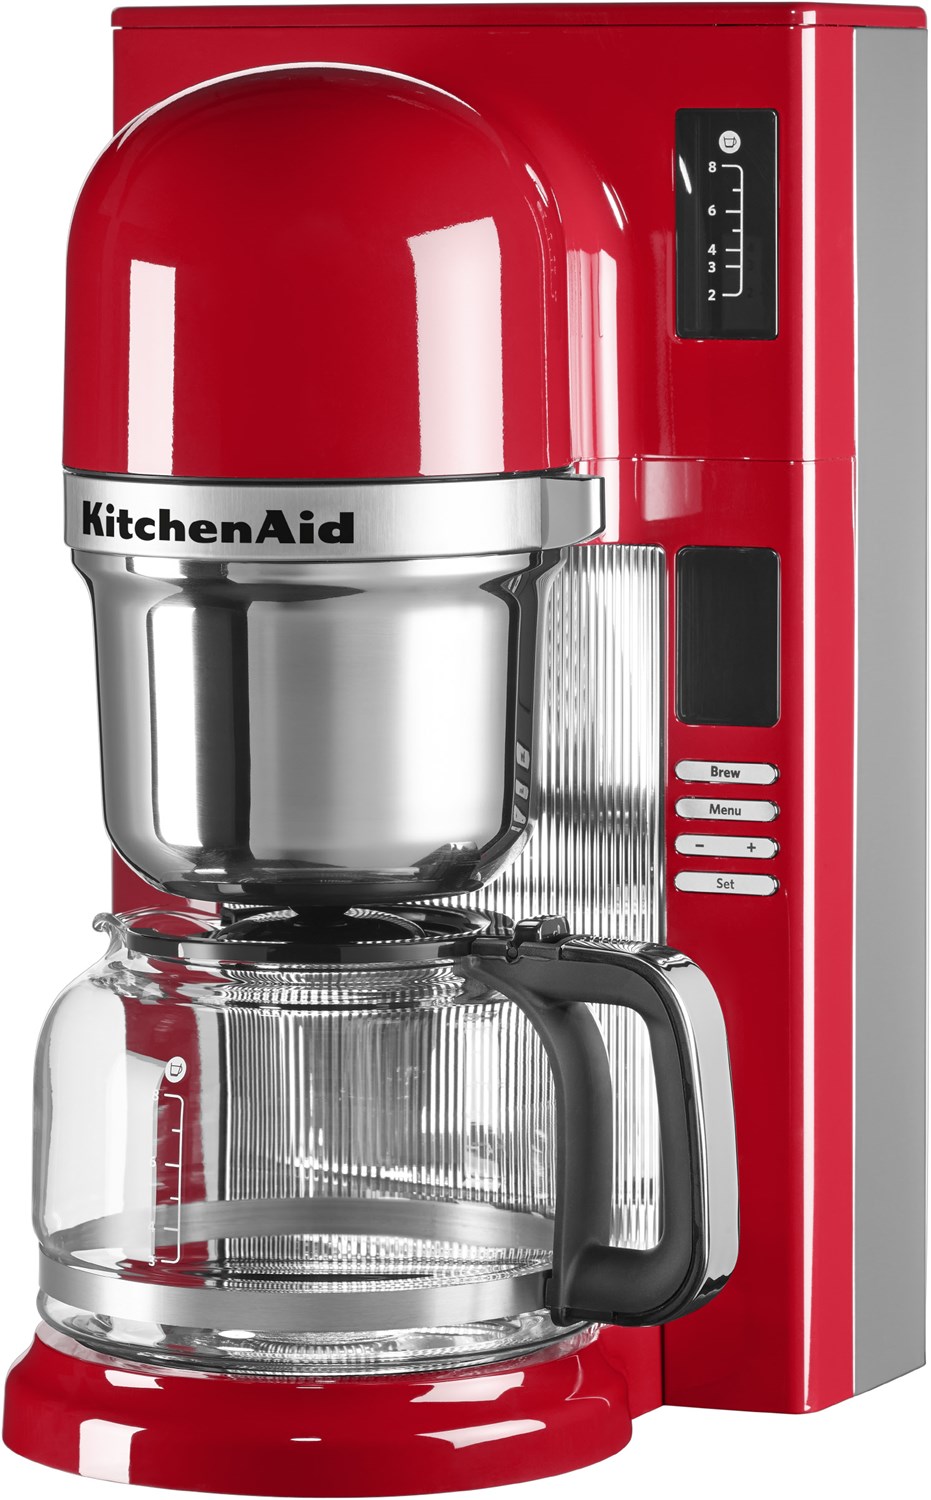 Schön und leistungsstark - die Filtermaschine von KitchenAid. (Foto: KitchenAid)